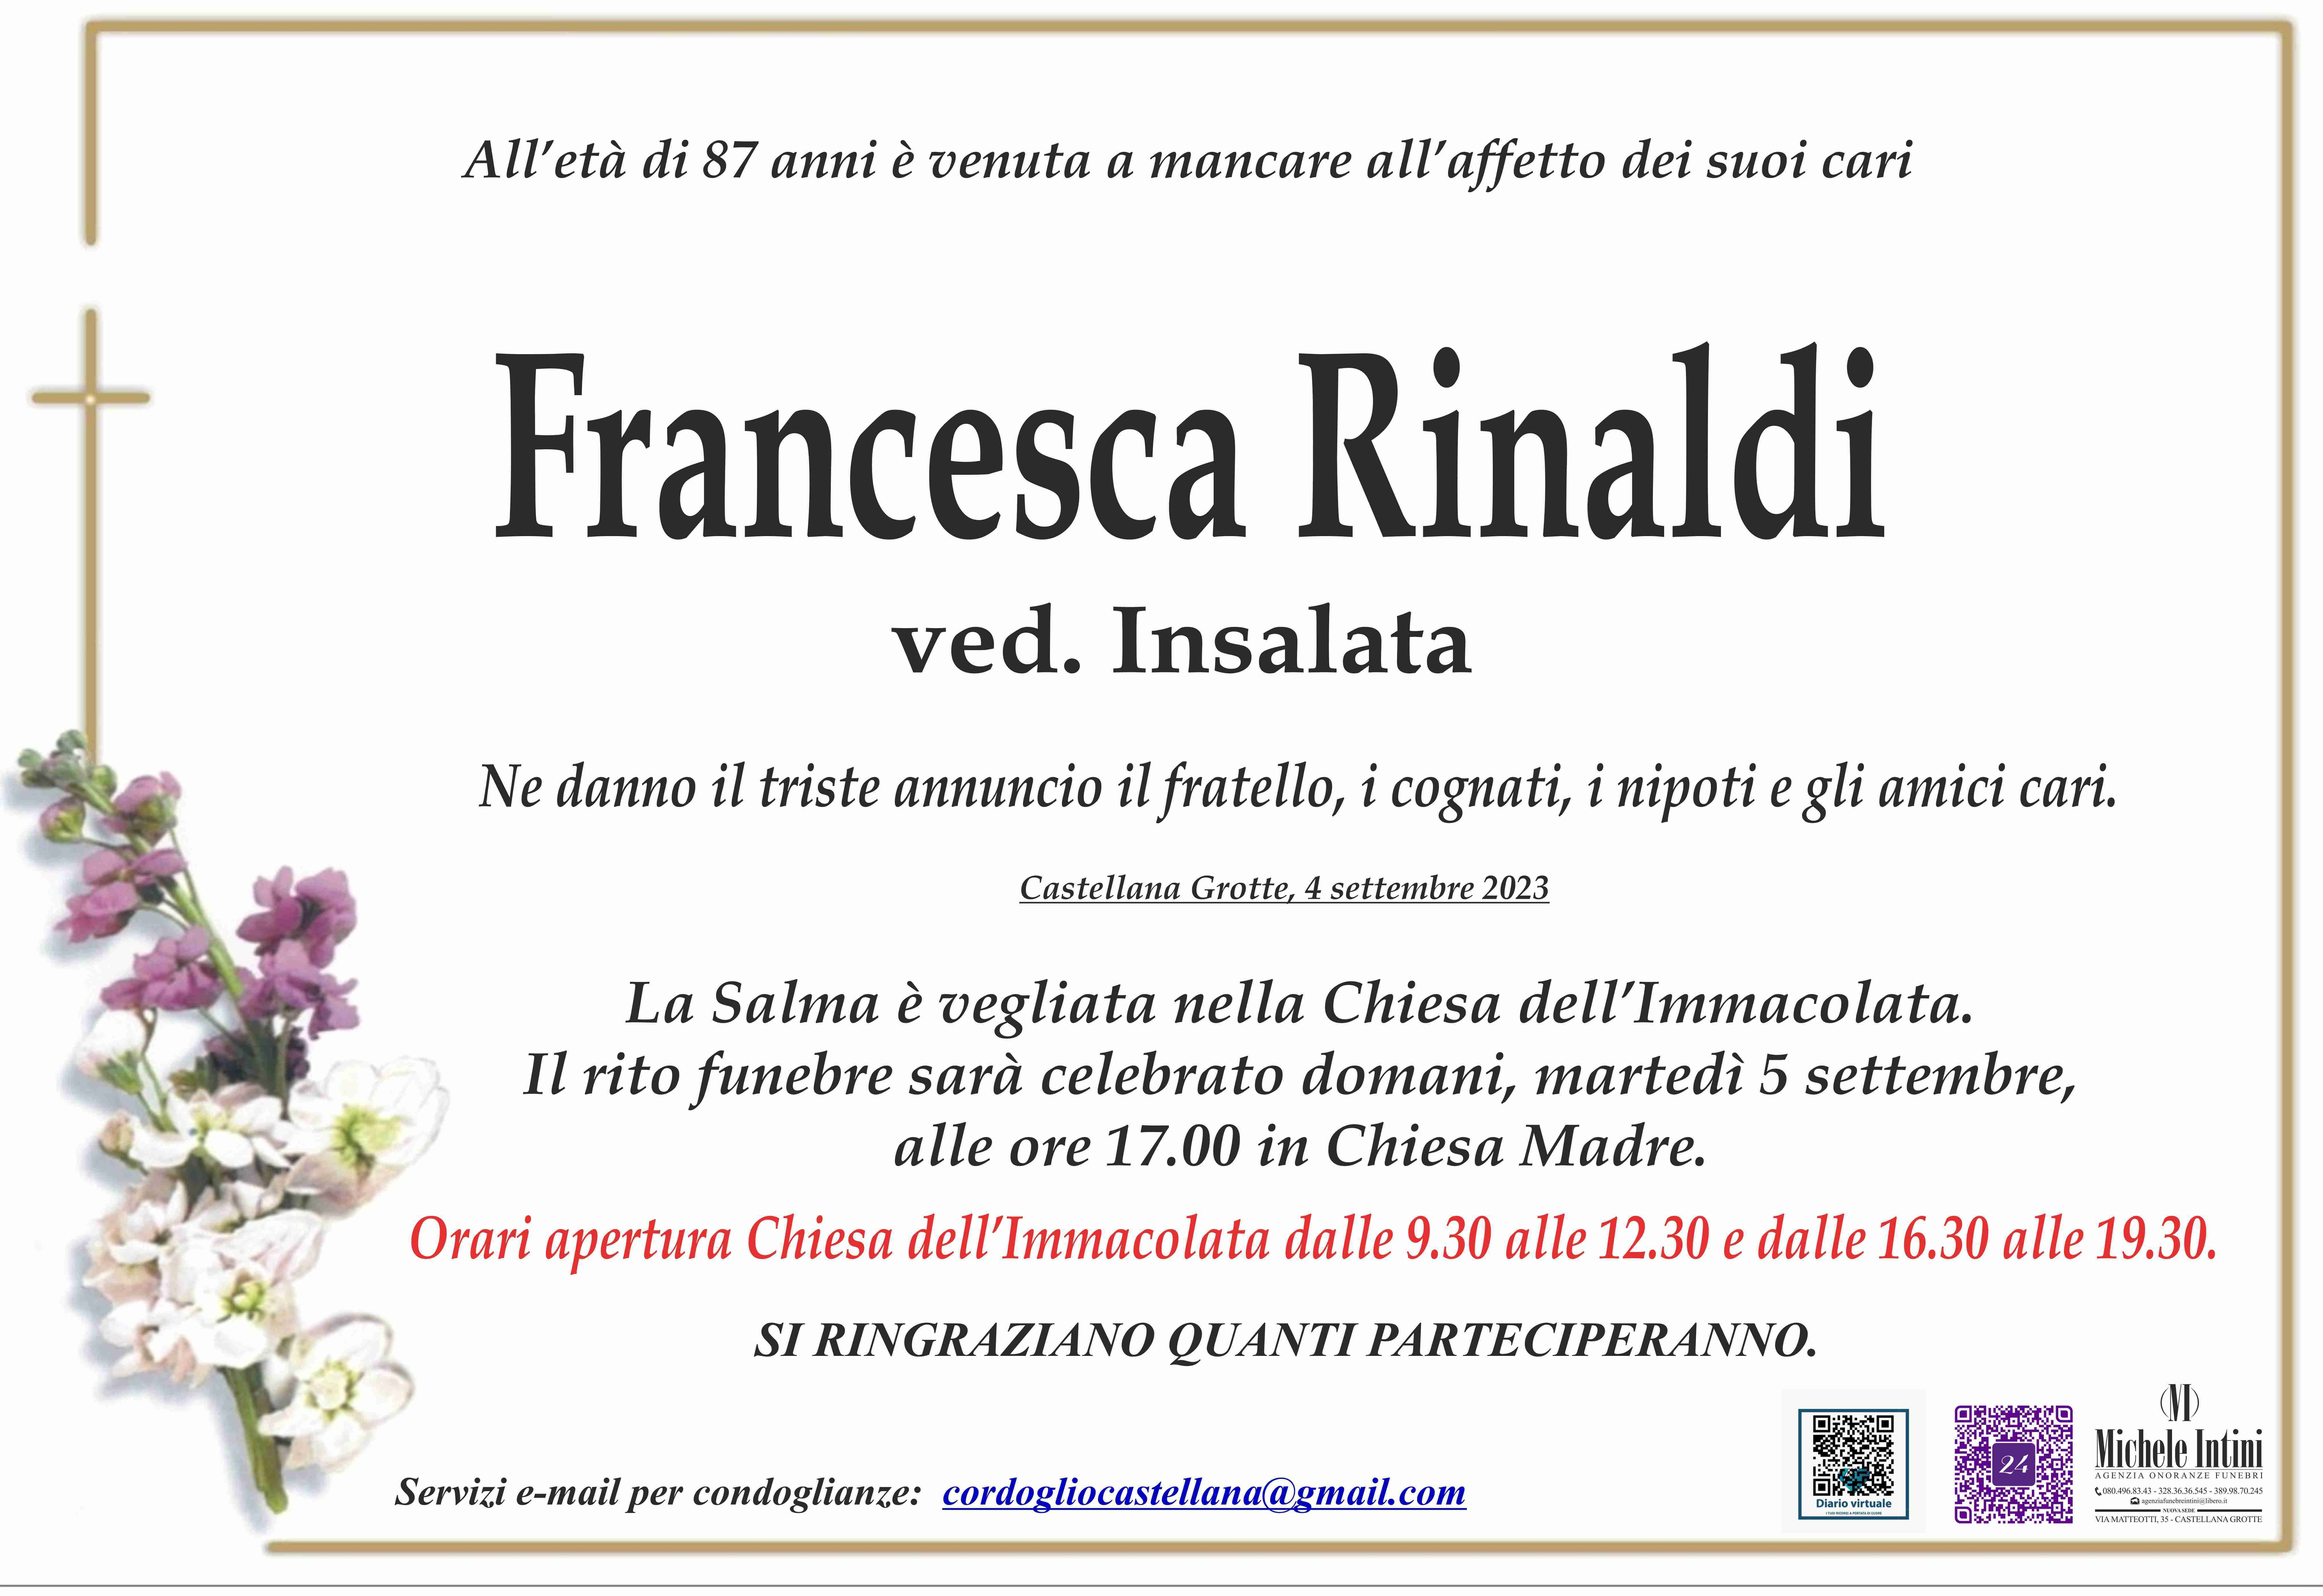 Francesca Rinaldi